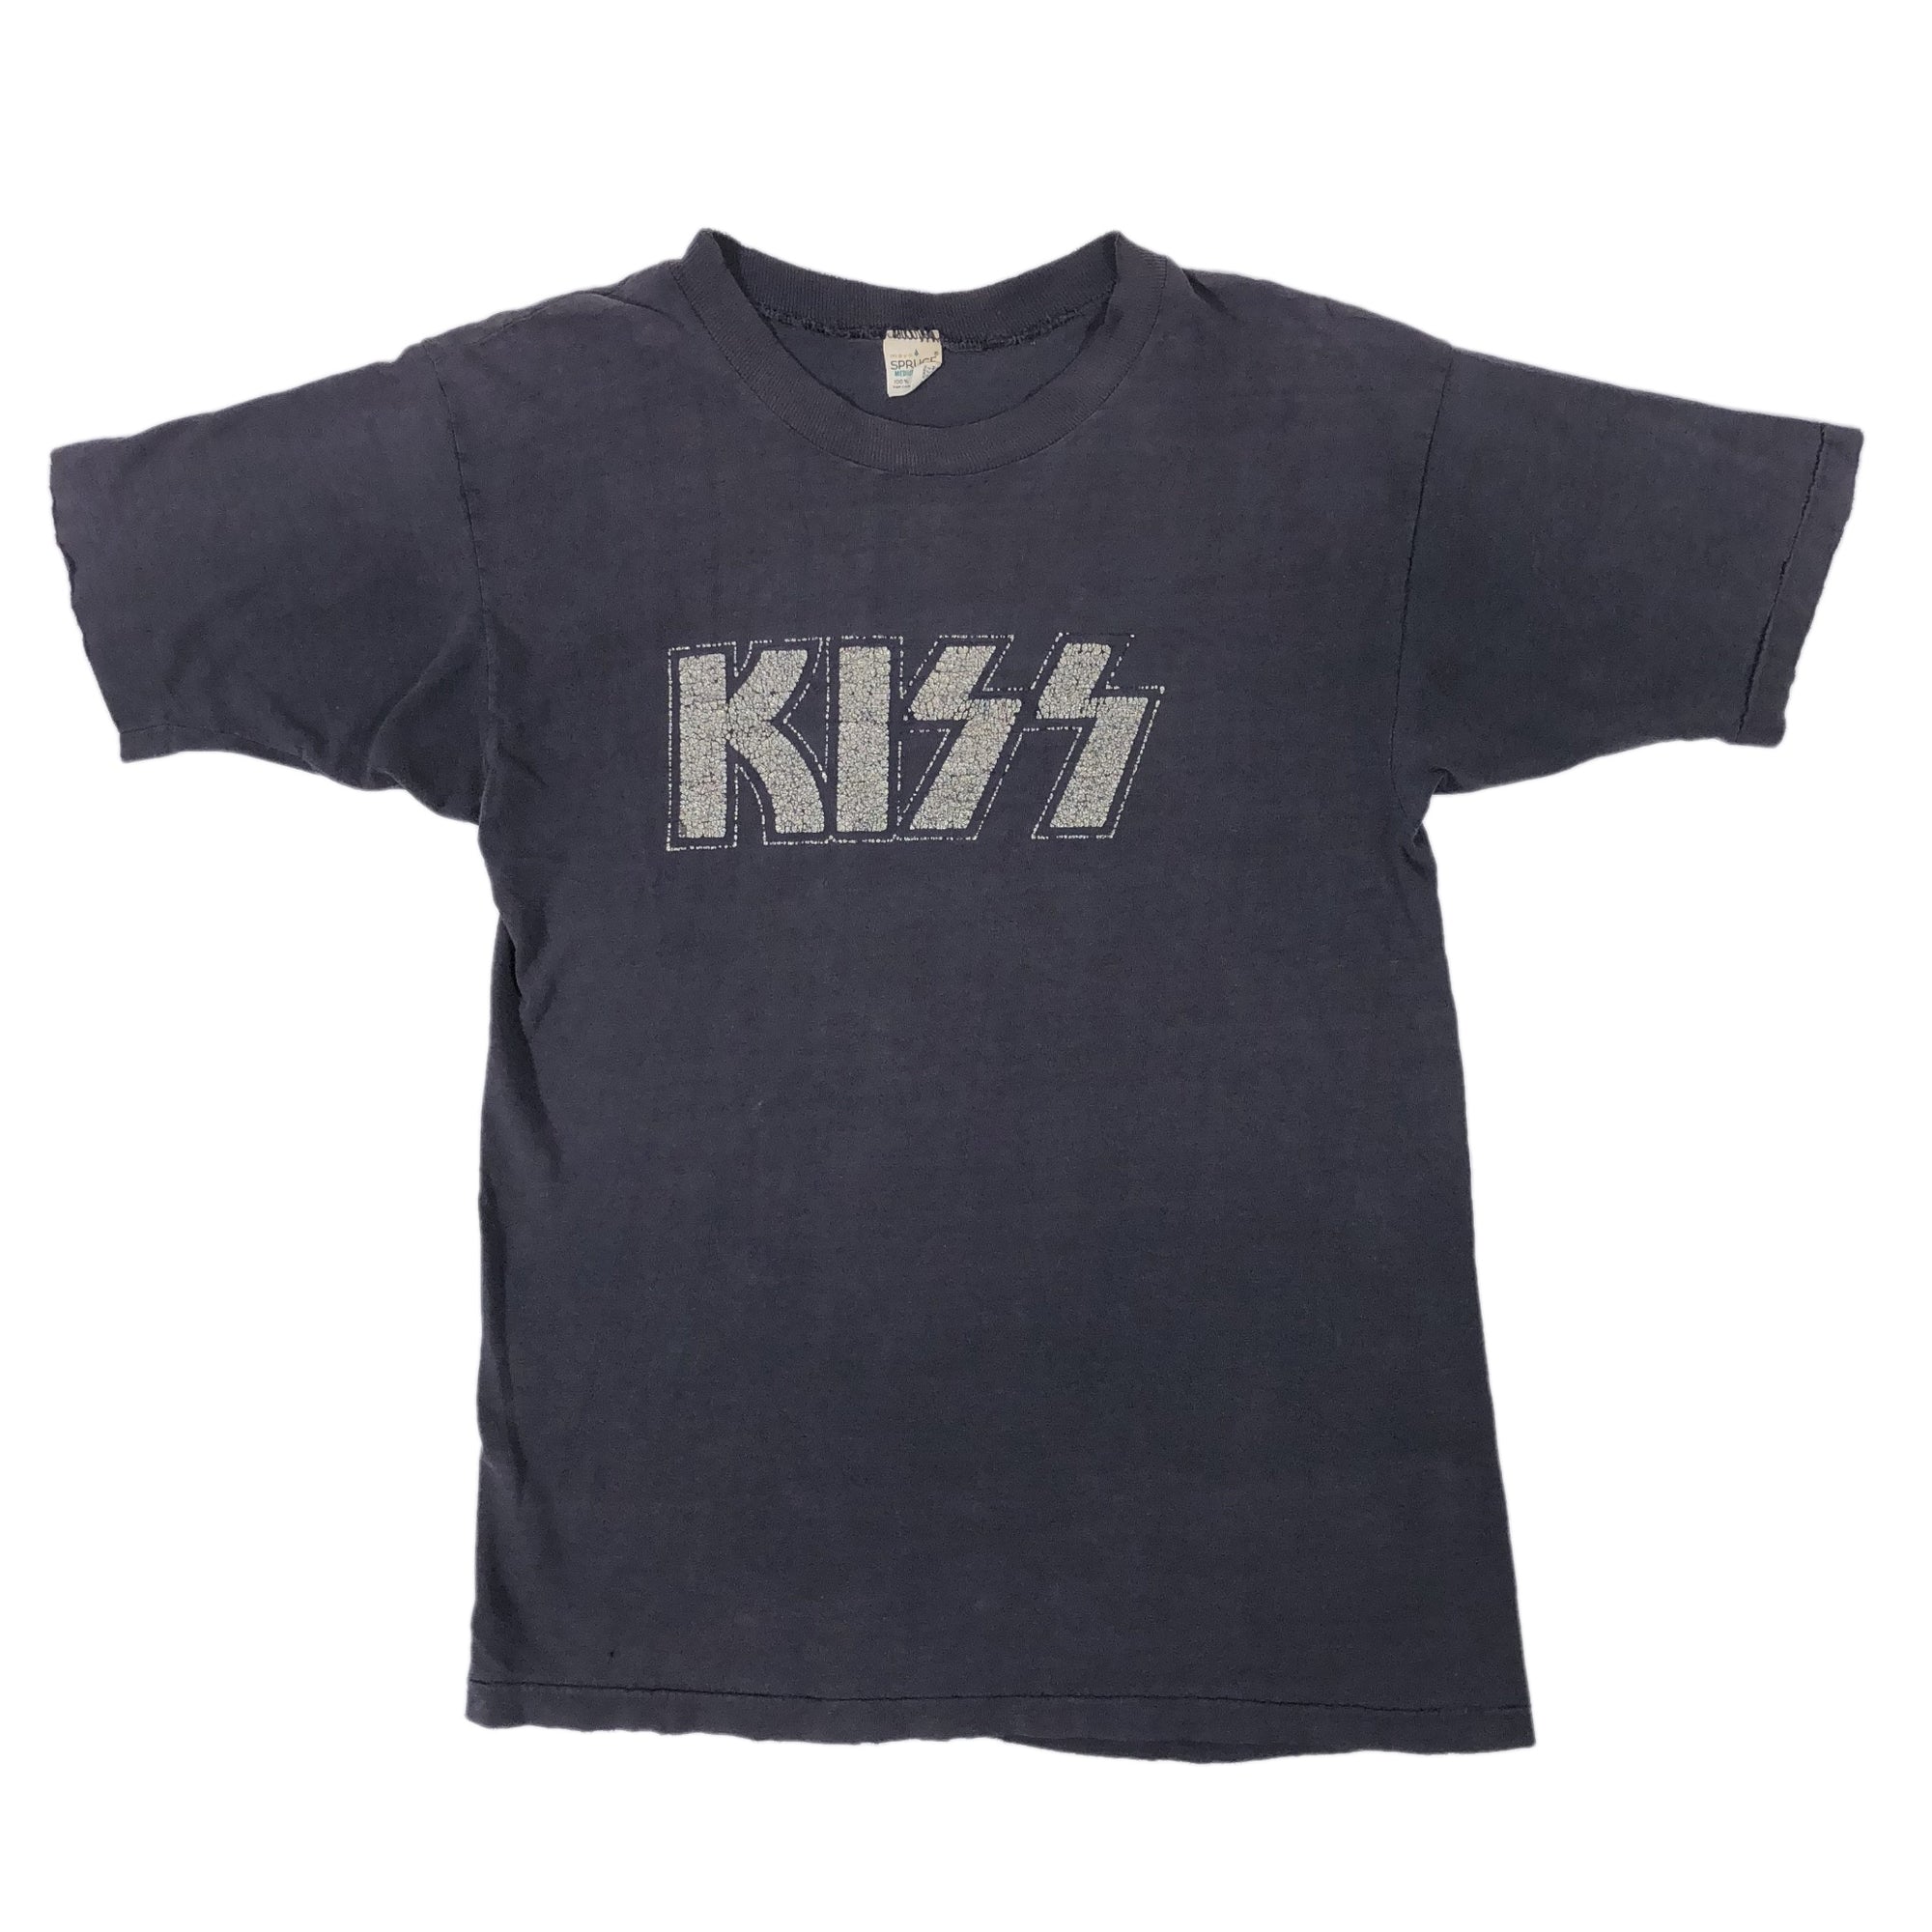 Vintage KISS "Logo" T-Shirt - jointcustodydc